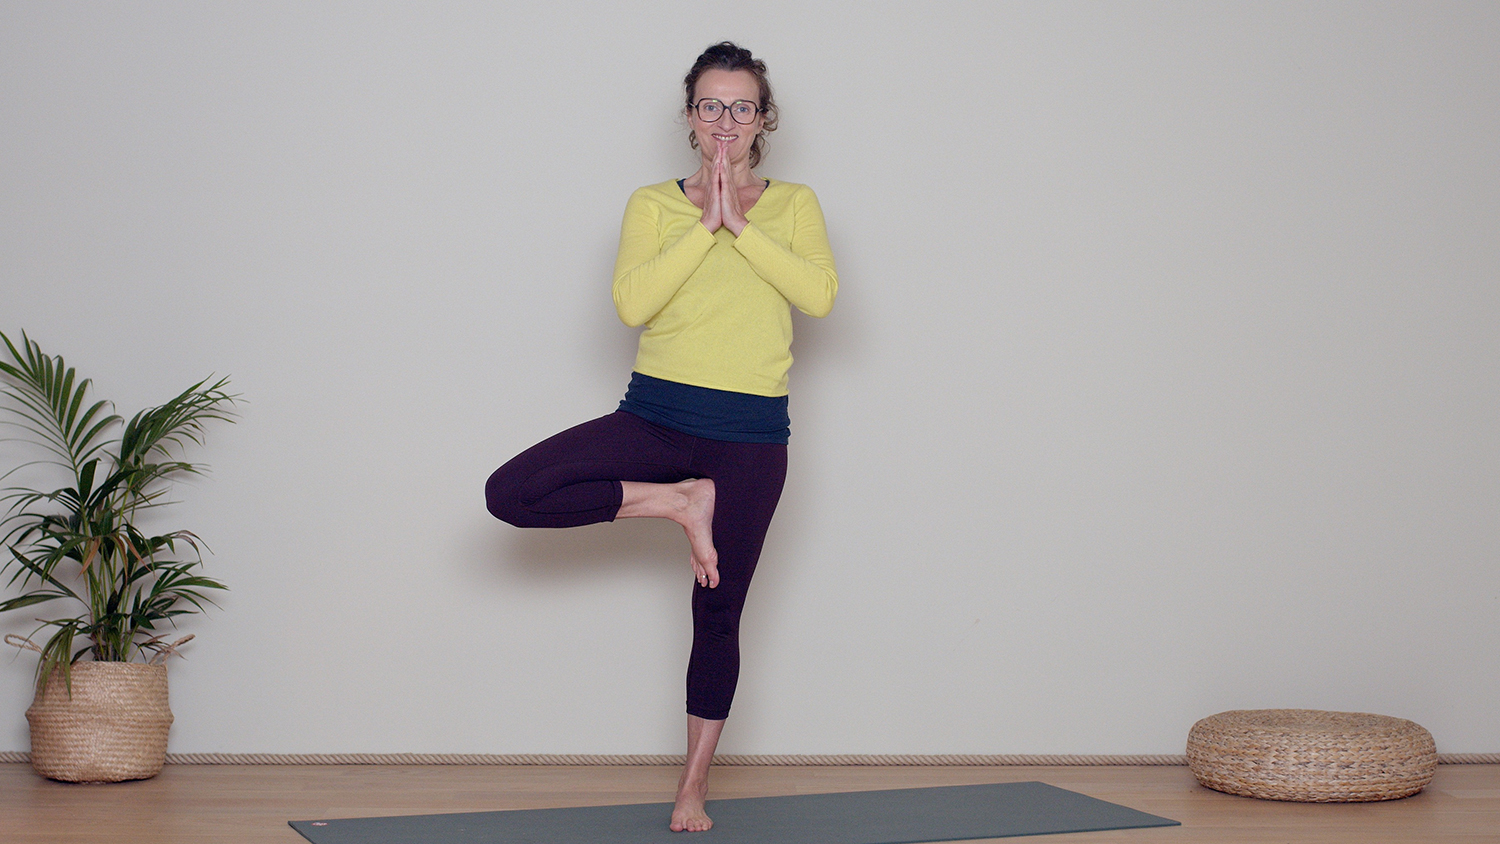 Comment tenir les équilibres ? | Cours de yoga en ligne avec Delphine Denis | Techniques du Yoga